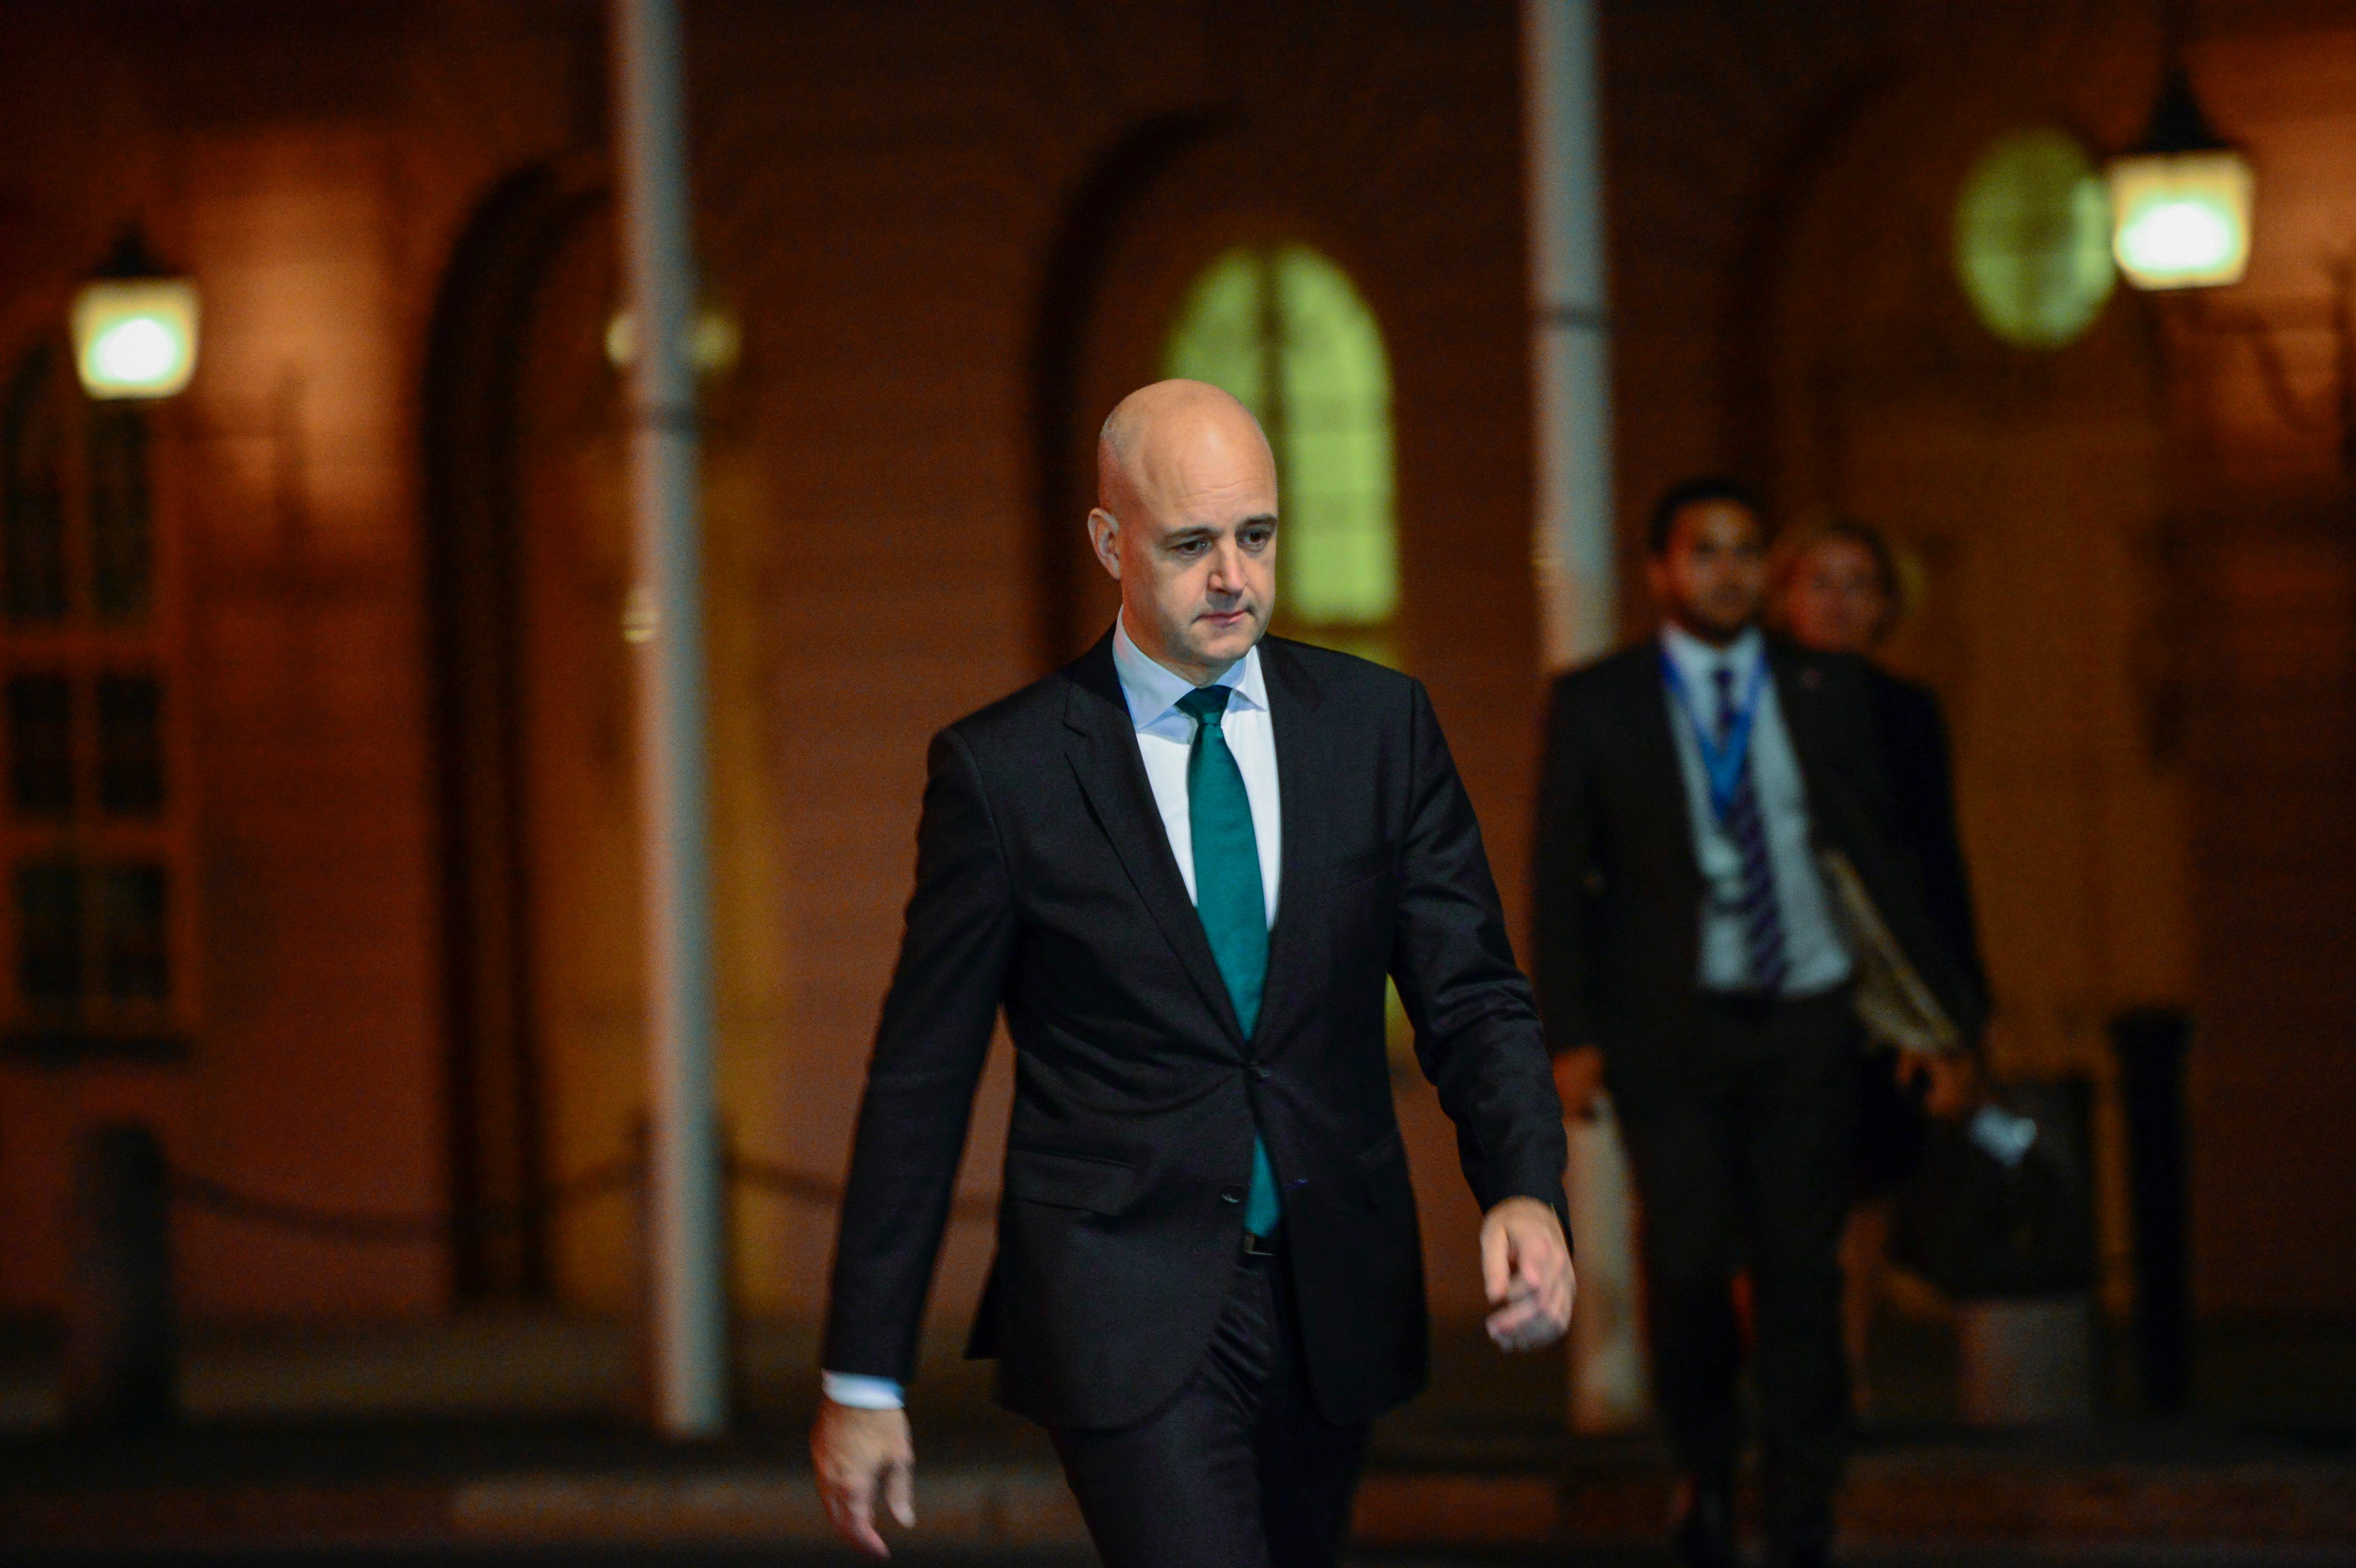 Statsminister Fredrik Reinfeldt har svårt att locka väljare för tillfället.